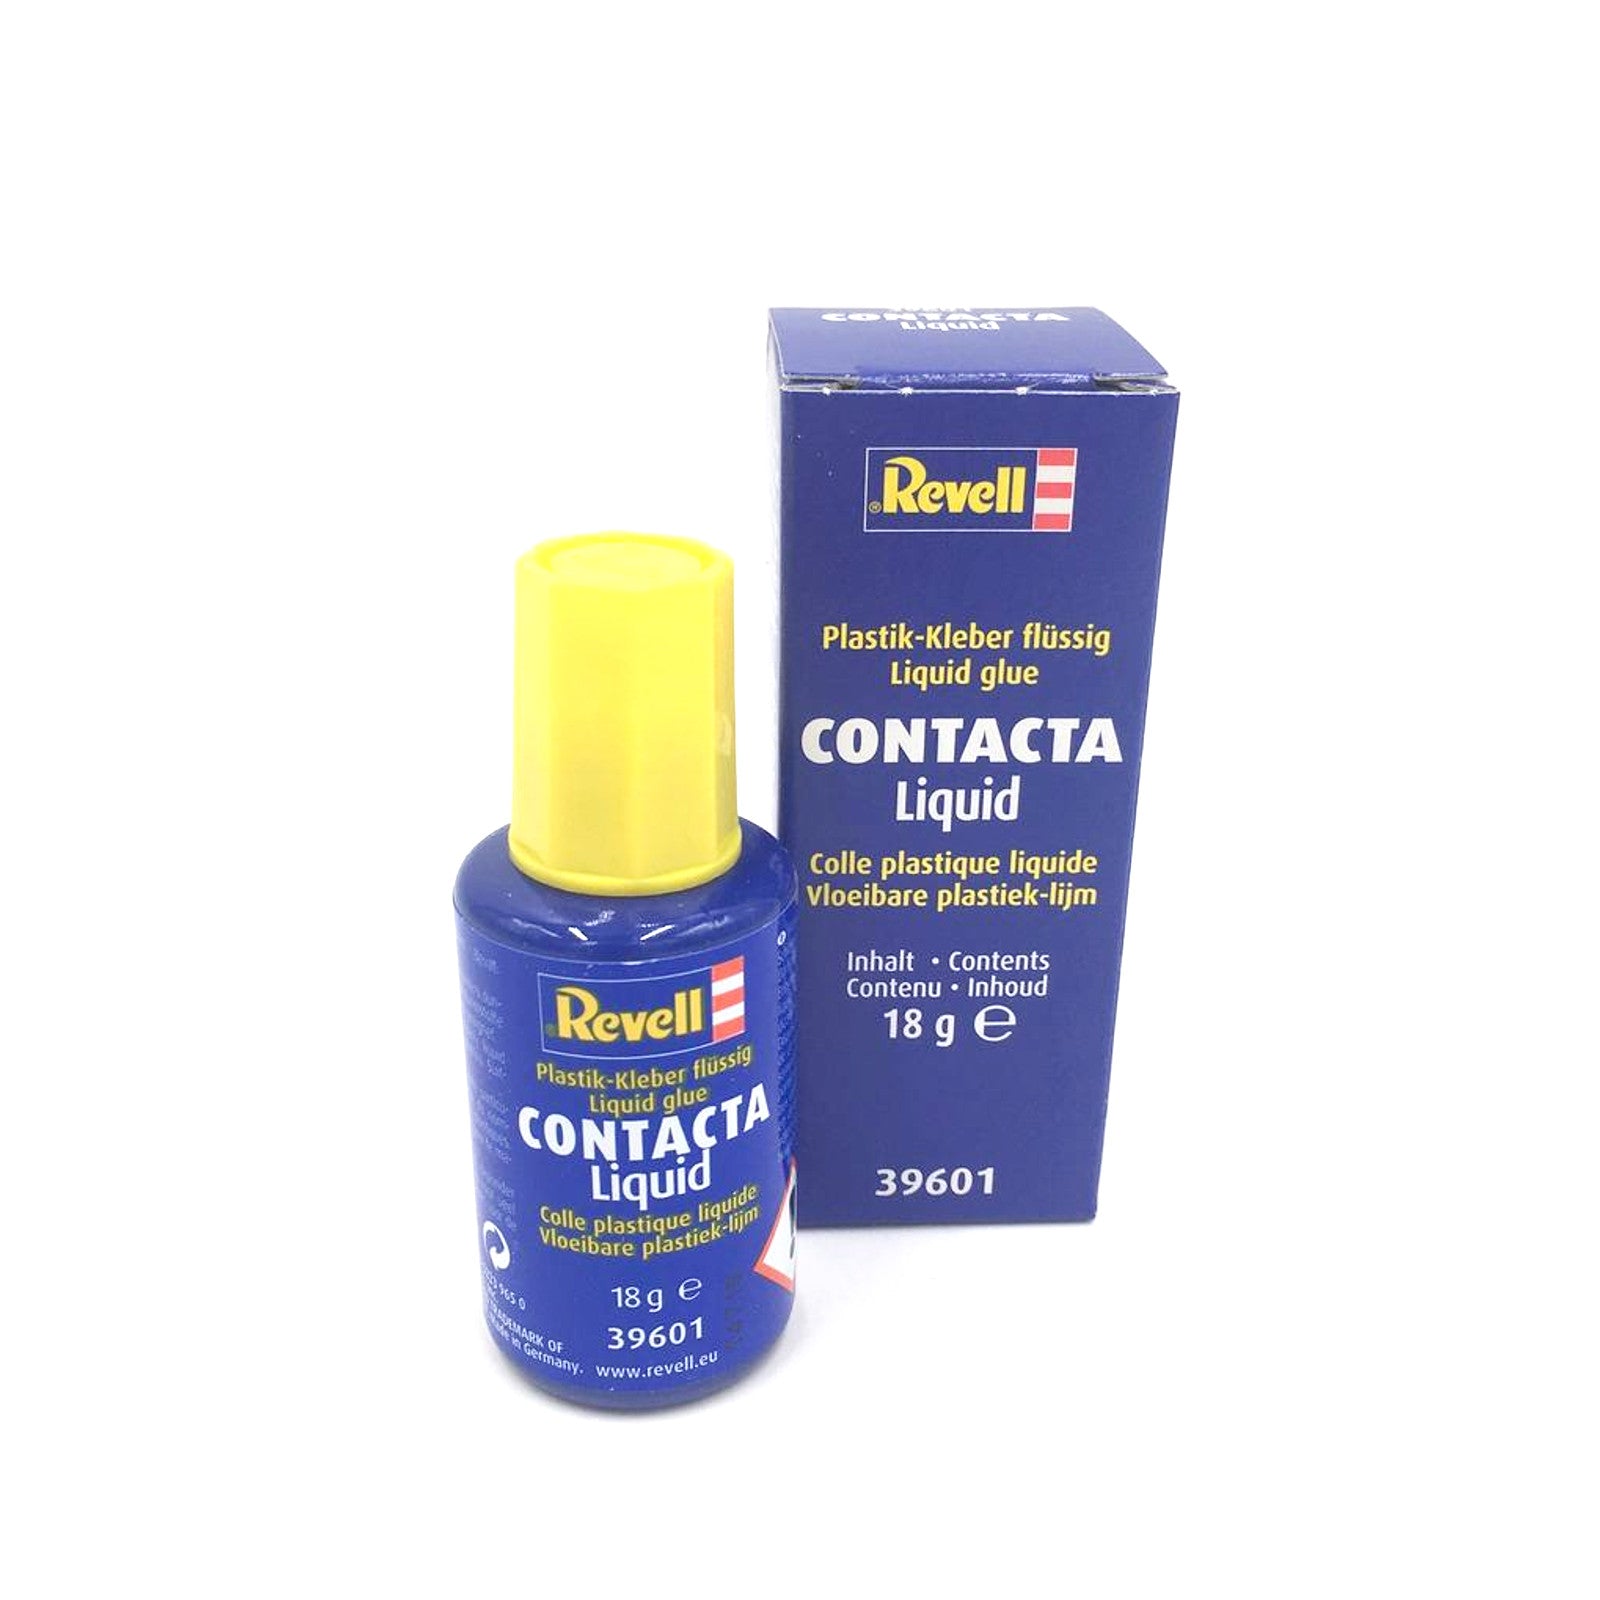 Contacta Liquid // Colle // Revell Online-Shop